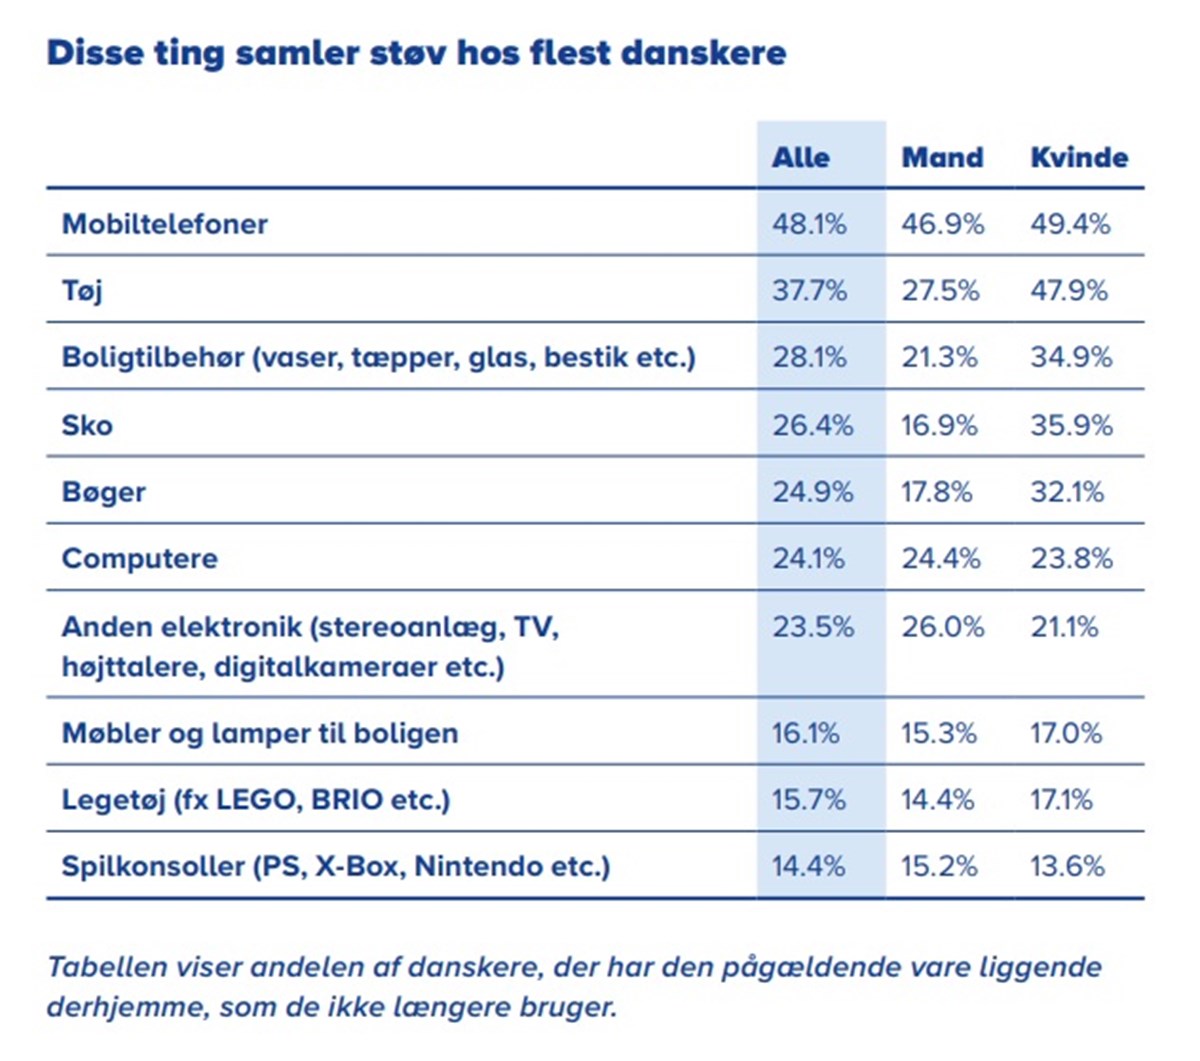 Tabellen viser andelen af danskere, der har den pågældende vare liggende derhjemme, som de ikke længere bruger. Tabellen er lånt fra DBAs Genbrugsindeks, som udkom i slutningen af 2018